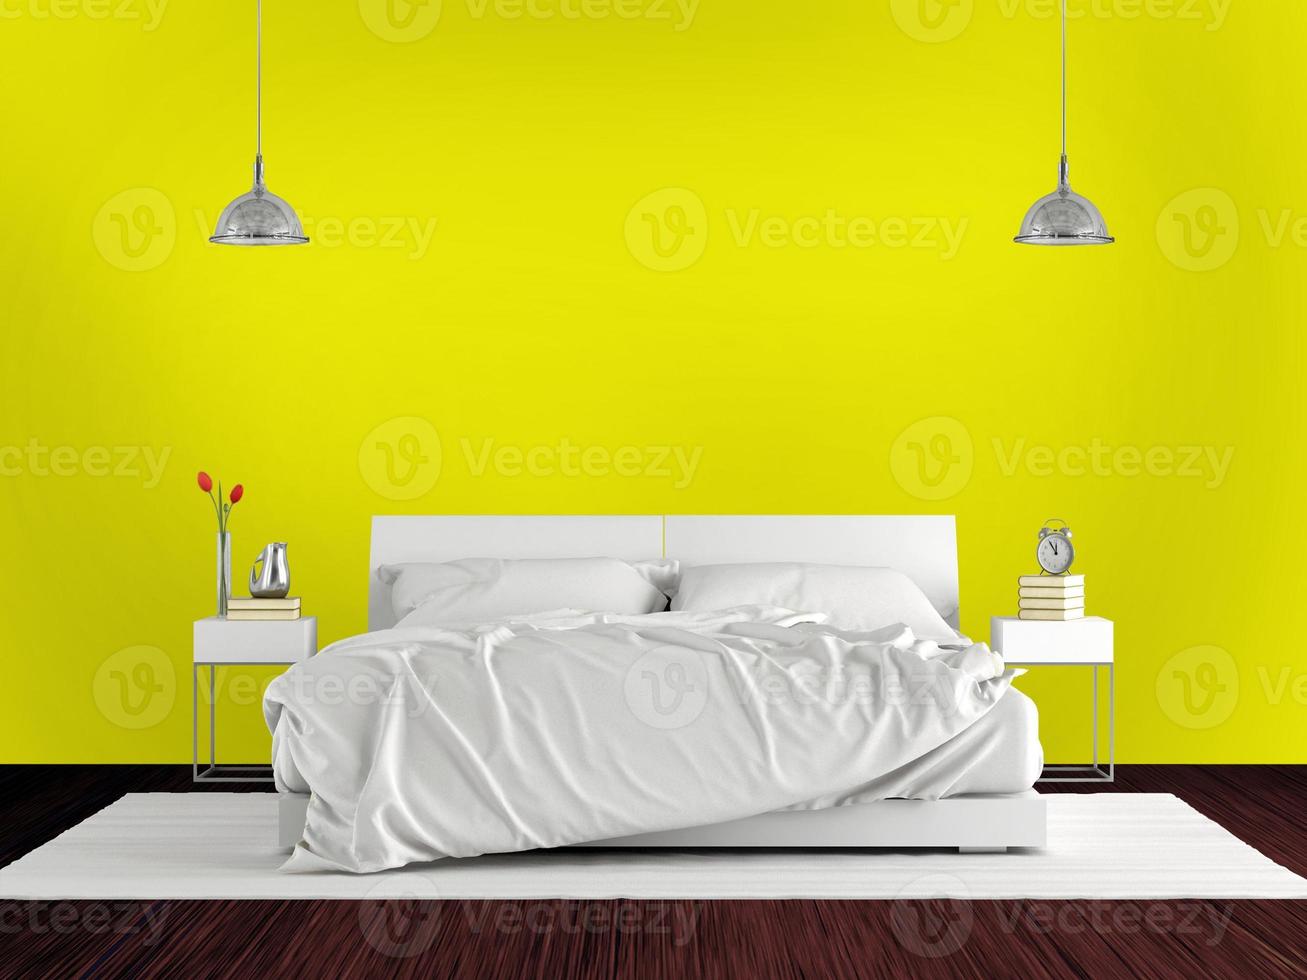 dormitorio principal minimalista con cama doble contra la pared amarilla - 3D rendering foto